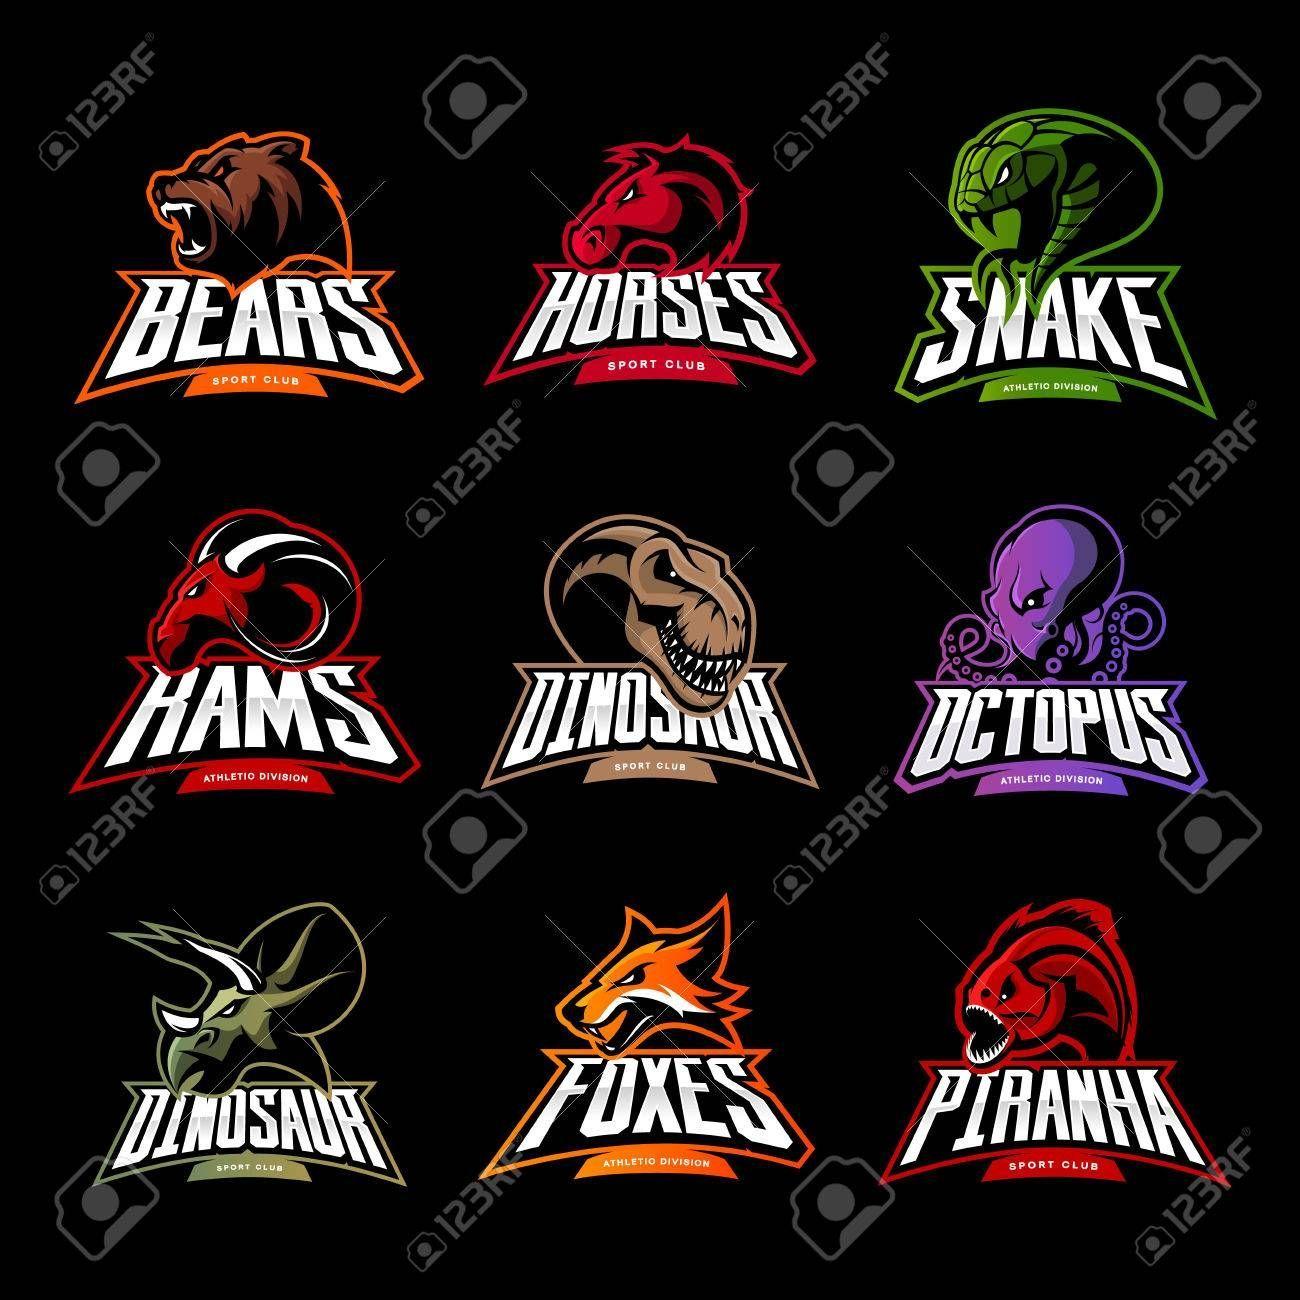 Snake Team Logo - Image result for snake team logo | clans | Logos, Logo design ...